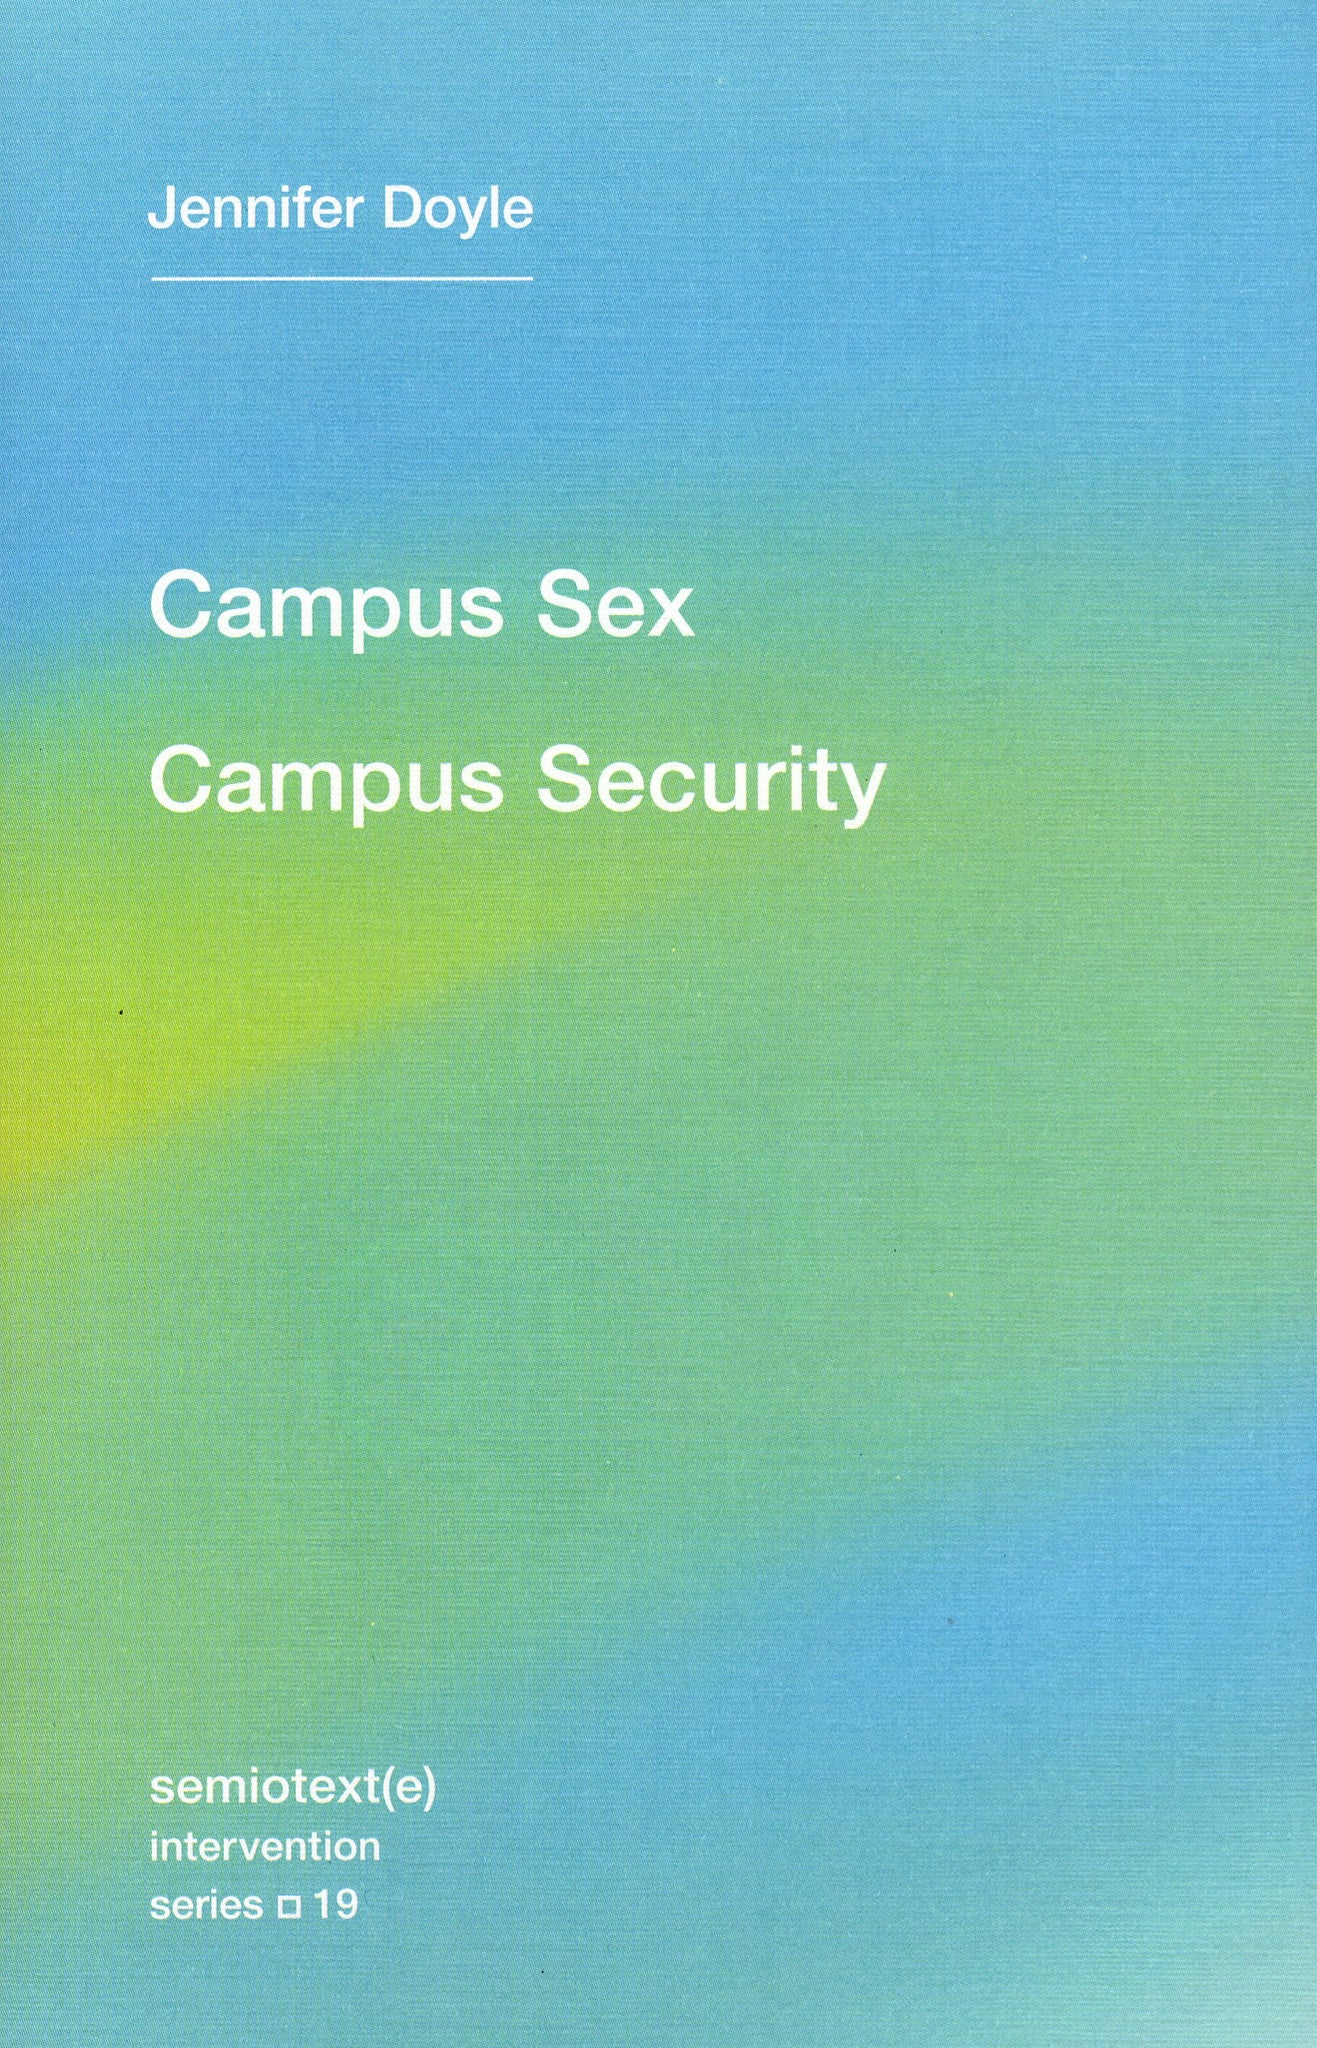 Jennifer Doyle: Campus Sex, Campus Security